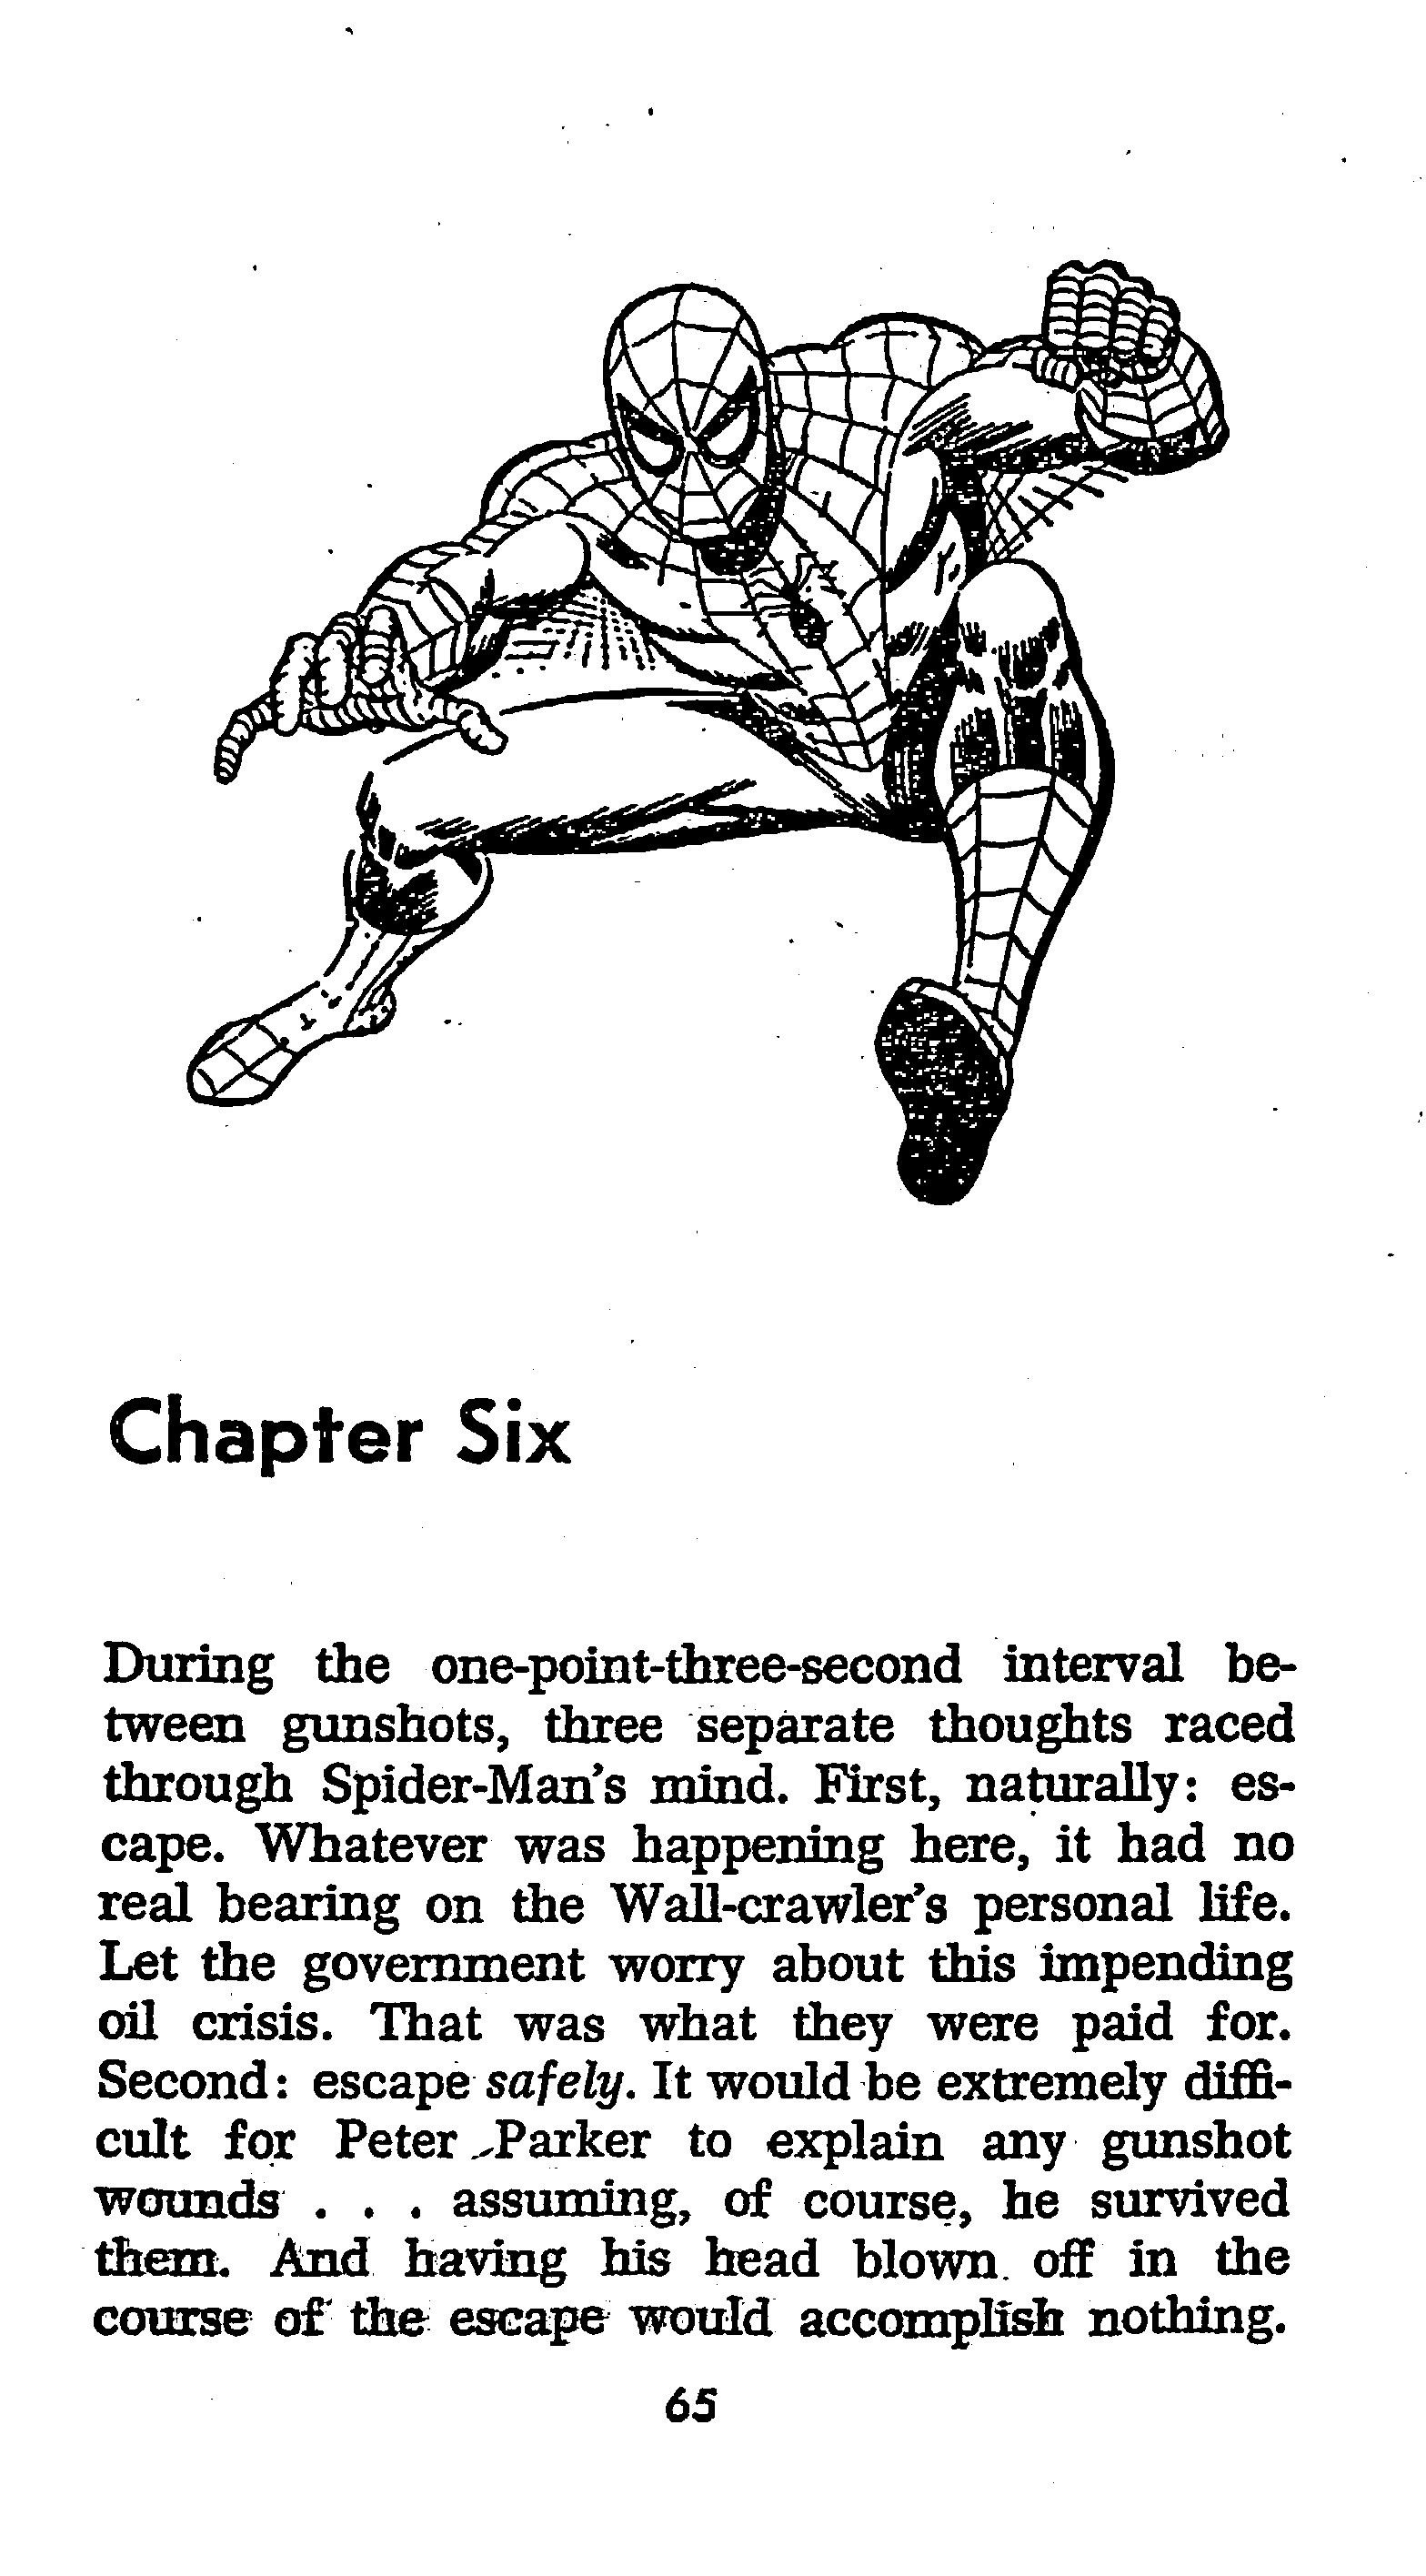 Read online The Amazing Spider-Man: Mayhem in Manhattan comic -  Issue # TPB (Part 1) - 66